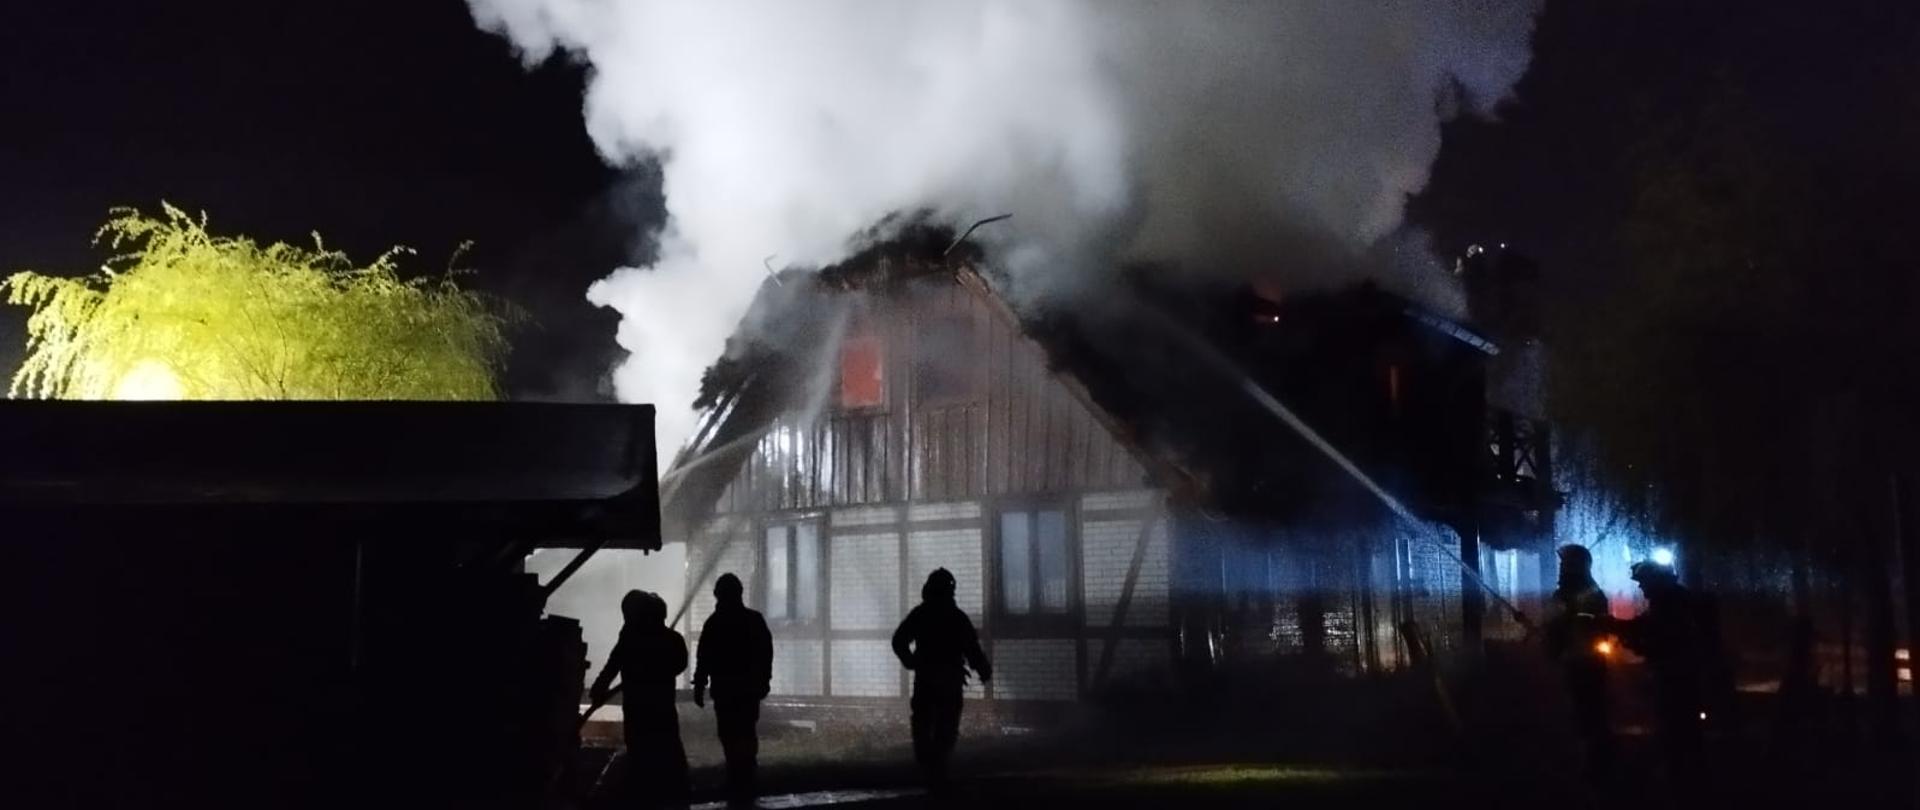 Akcja gaszenia domu. Jest noc, strażacy ze wszystkich stron podają prądy wody. Z dachu budynku wydobywają się kłęby dymu, w jednym z okien widoczny jest ogień.